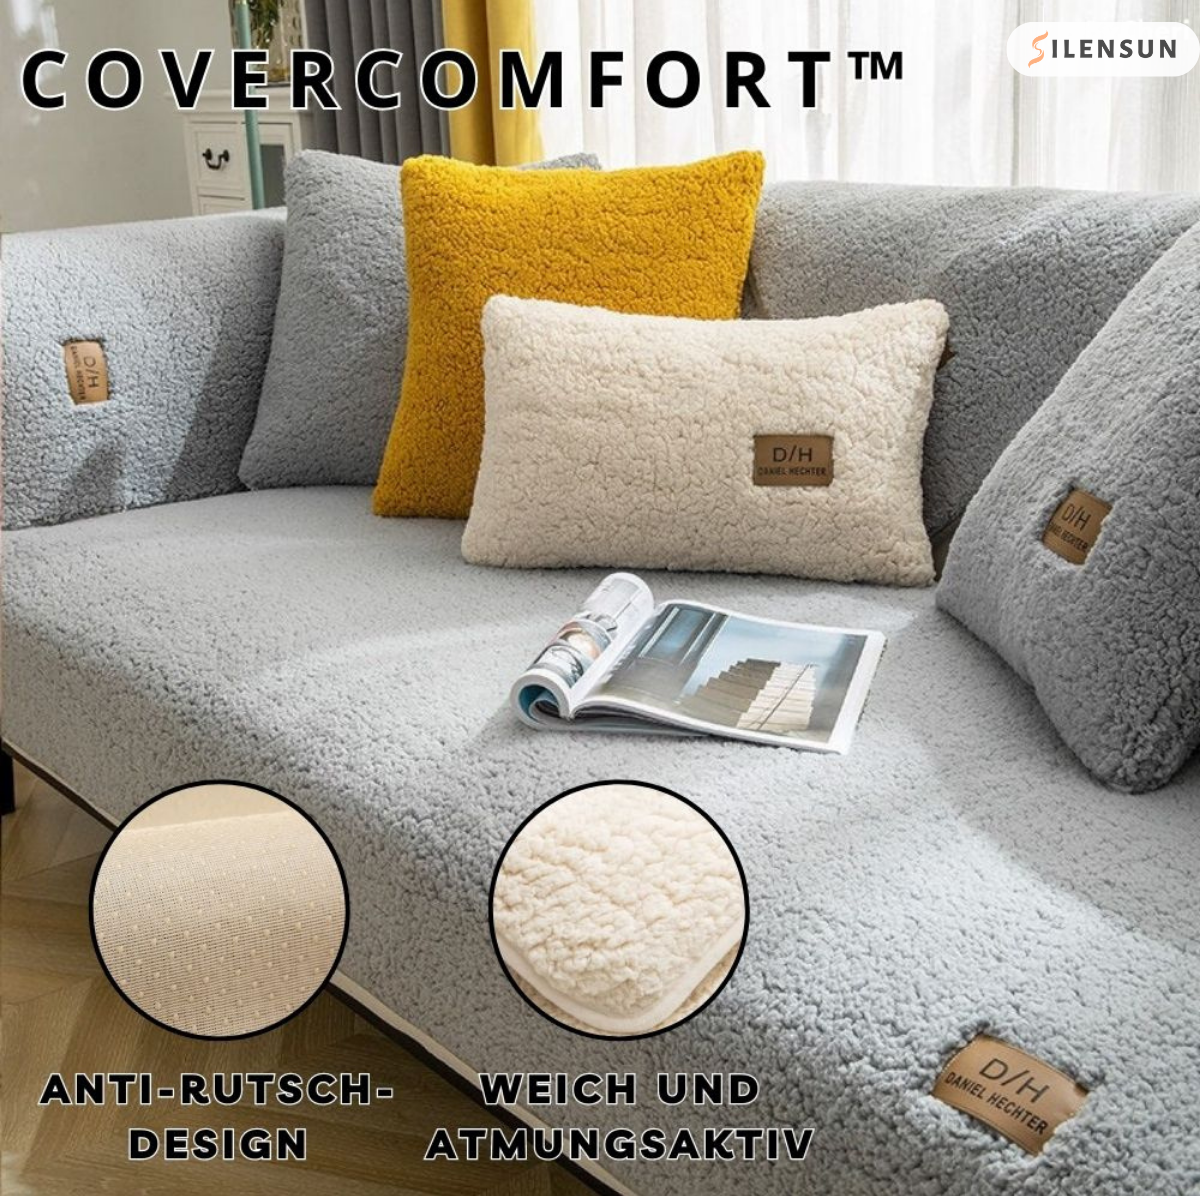 CoverComfort™ – Geben Sie Ihrem Sofa ein zweites Leben! 1+1 GRATIS